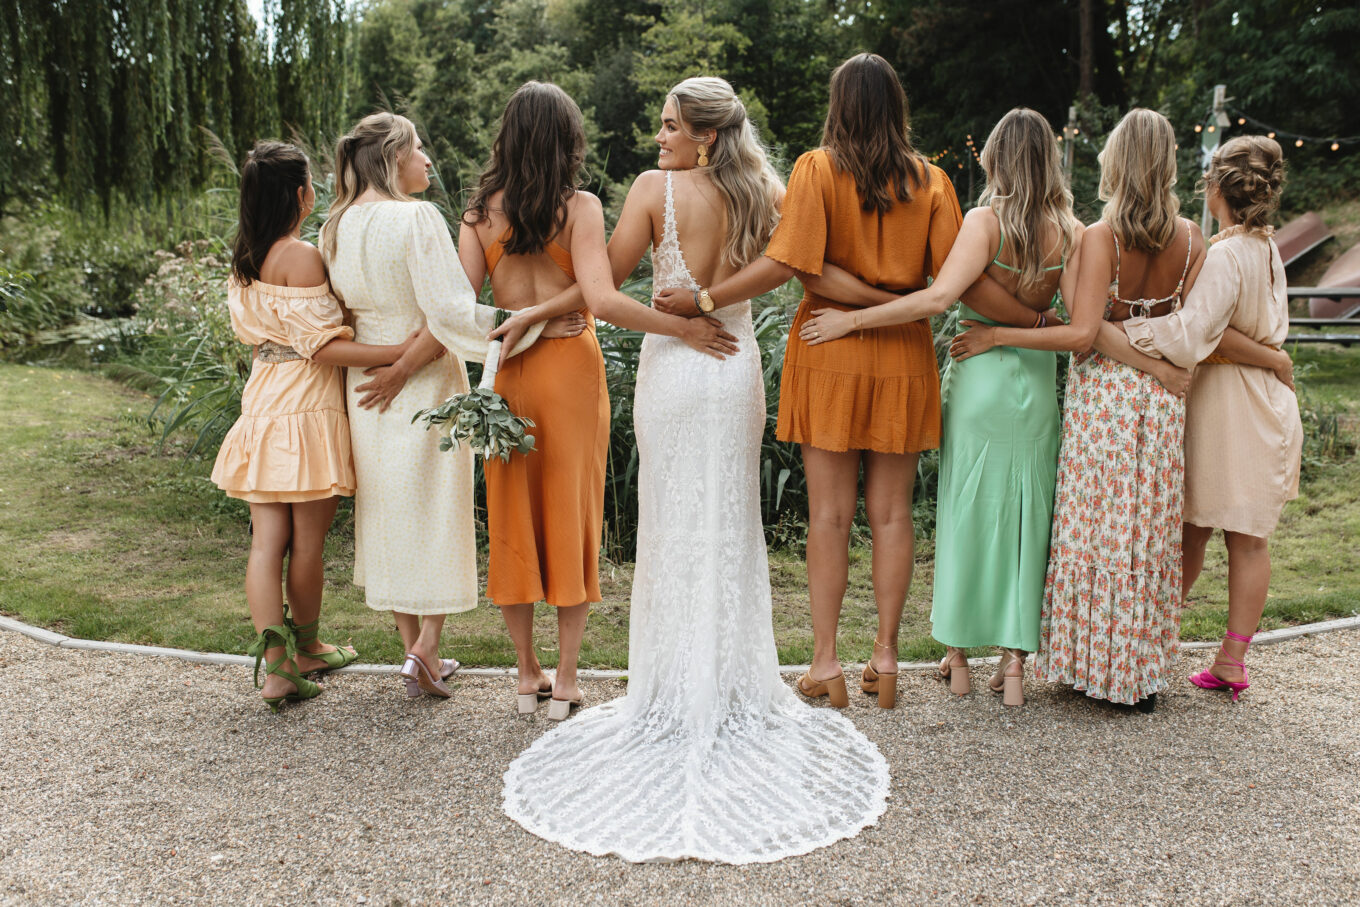 Verwachting mixer Stereotype Tips voor de mooiste bruiloft jurkjes (+ dresscode do's & don'ts)